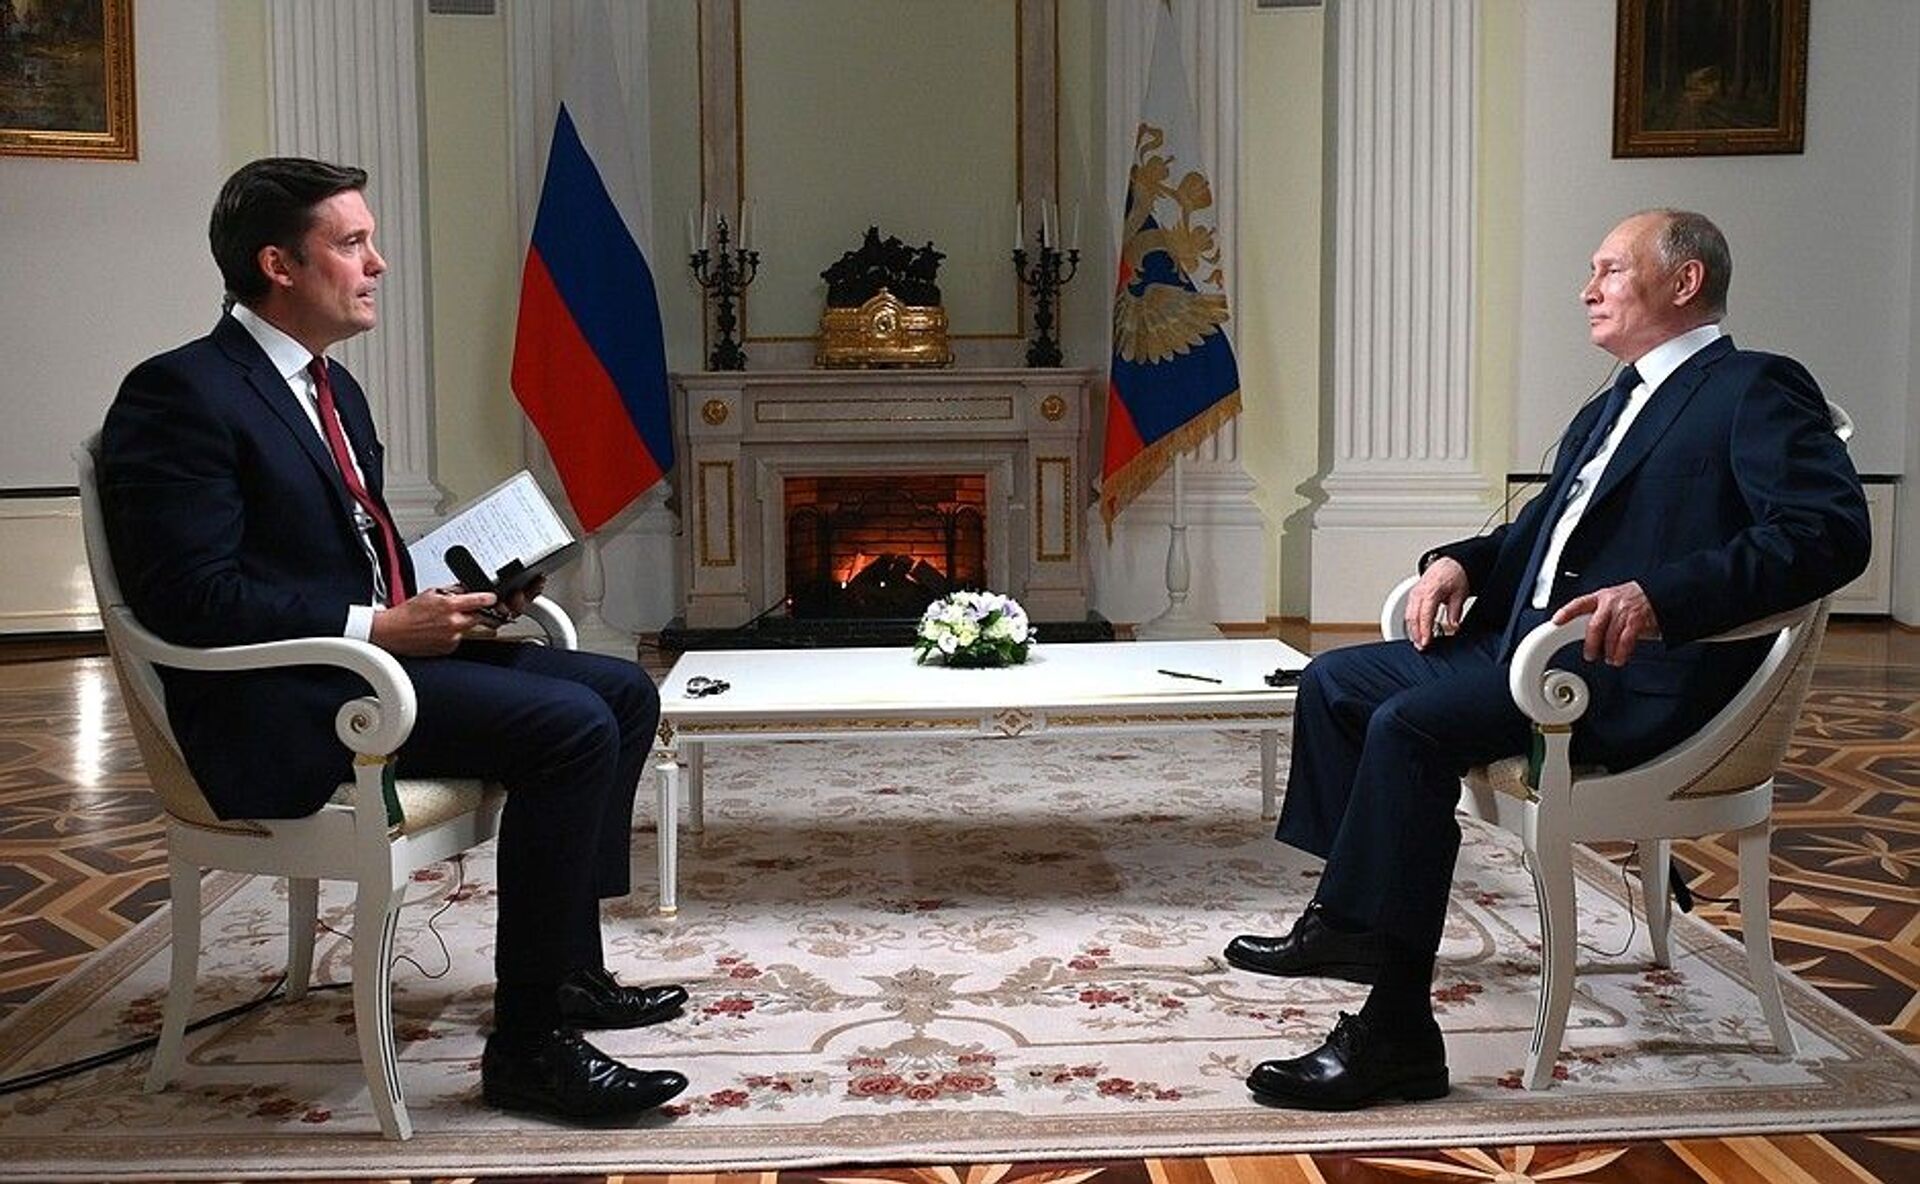  Большое интервью Путина телеканалу NBC перед встречей с Байденом - видео - Sputnik Казахстан, 1920, 15.06.2021